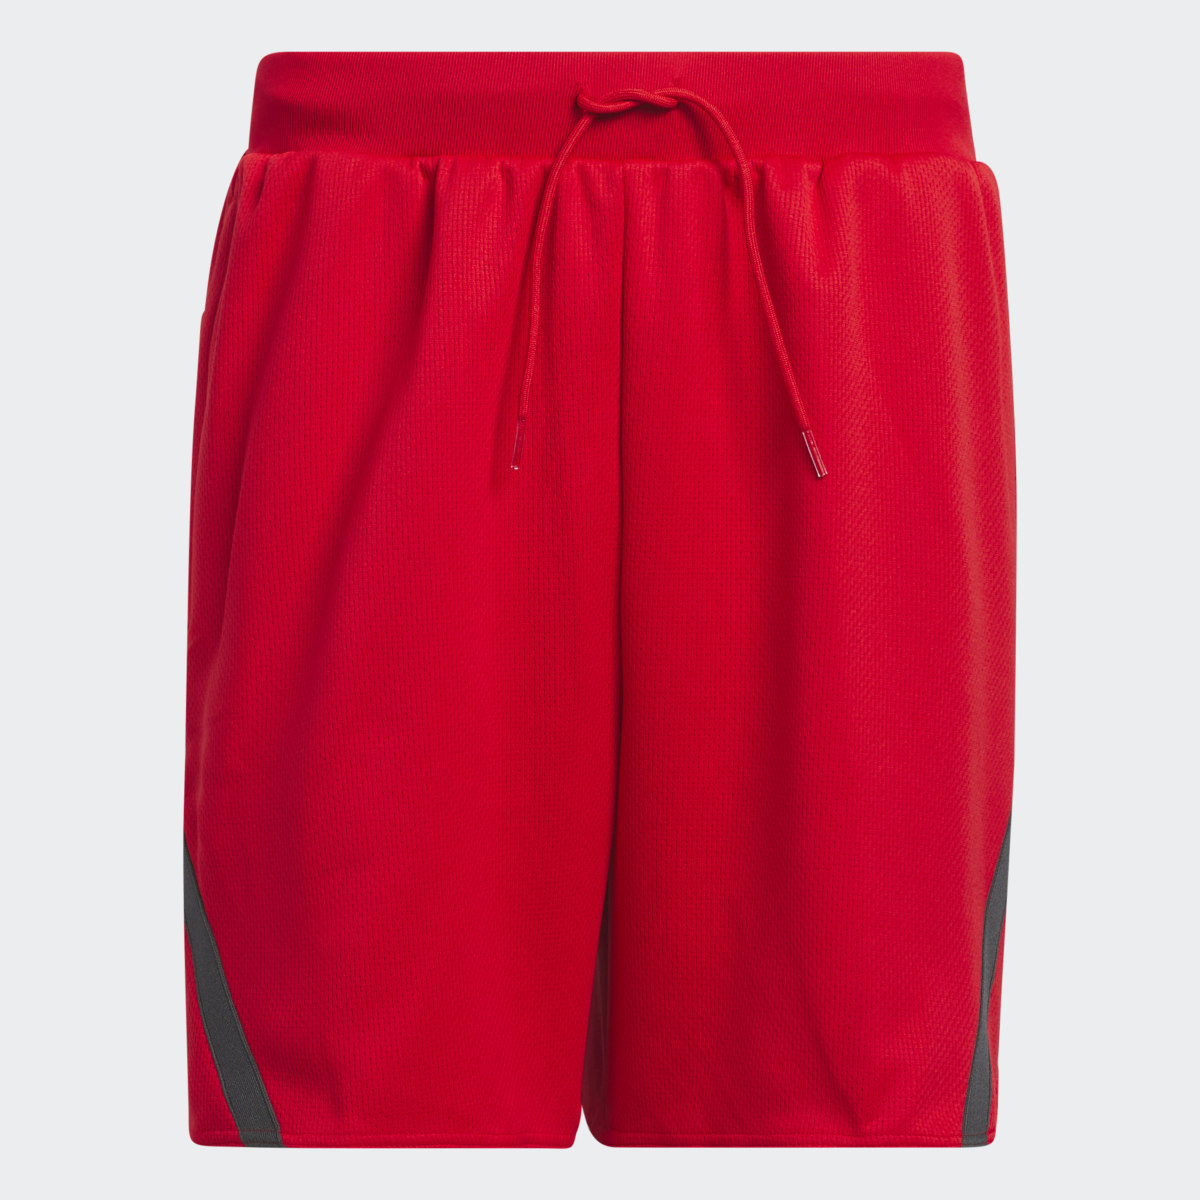 Adidas Select Shorts. 4